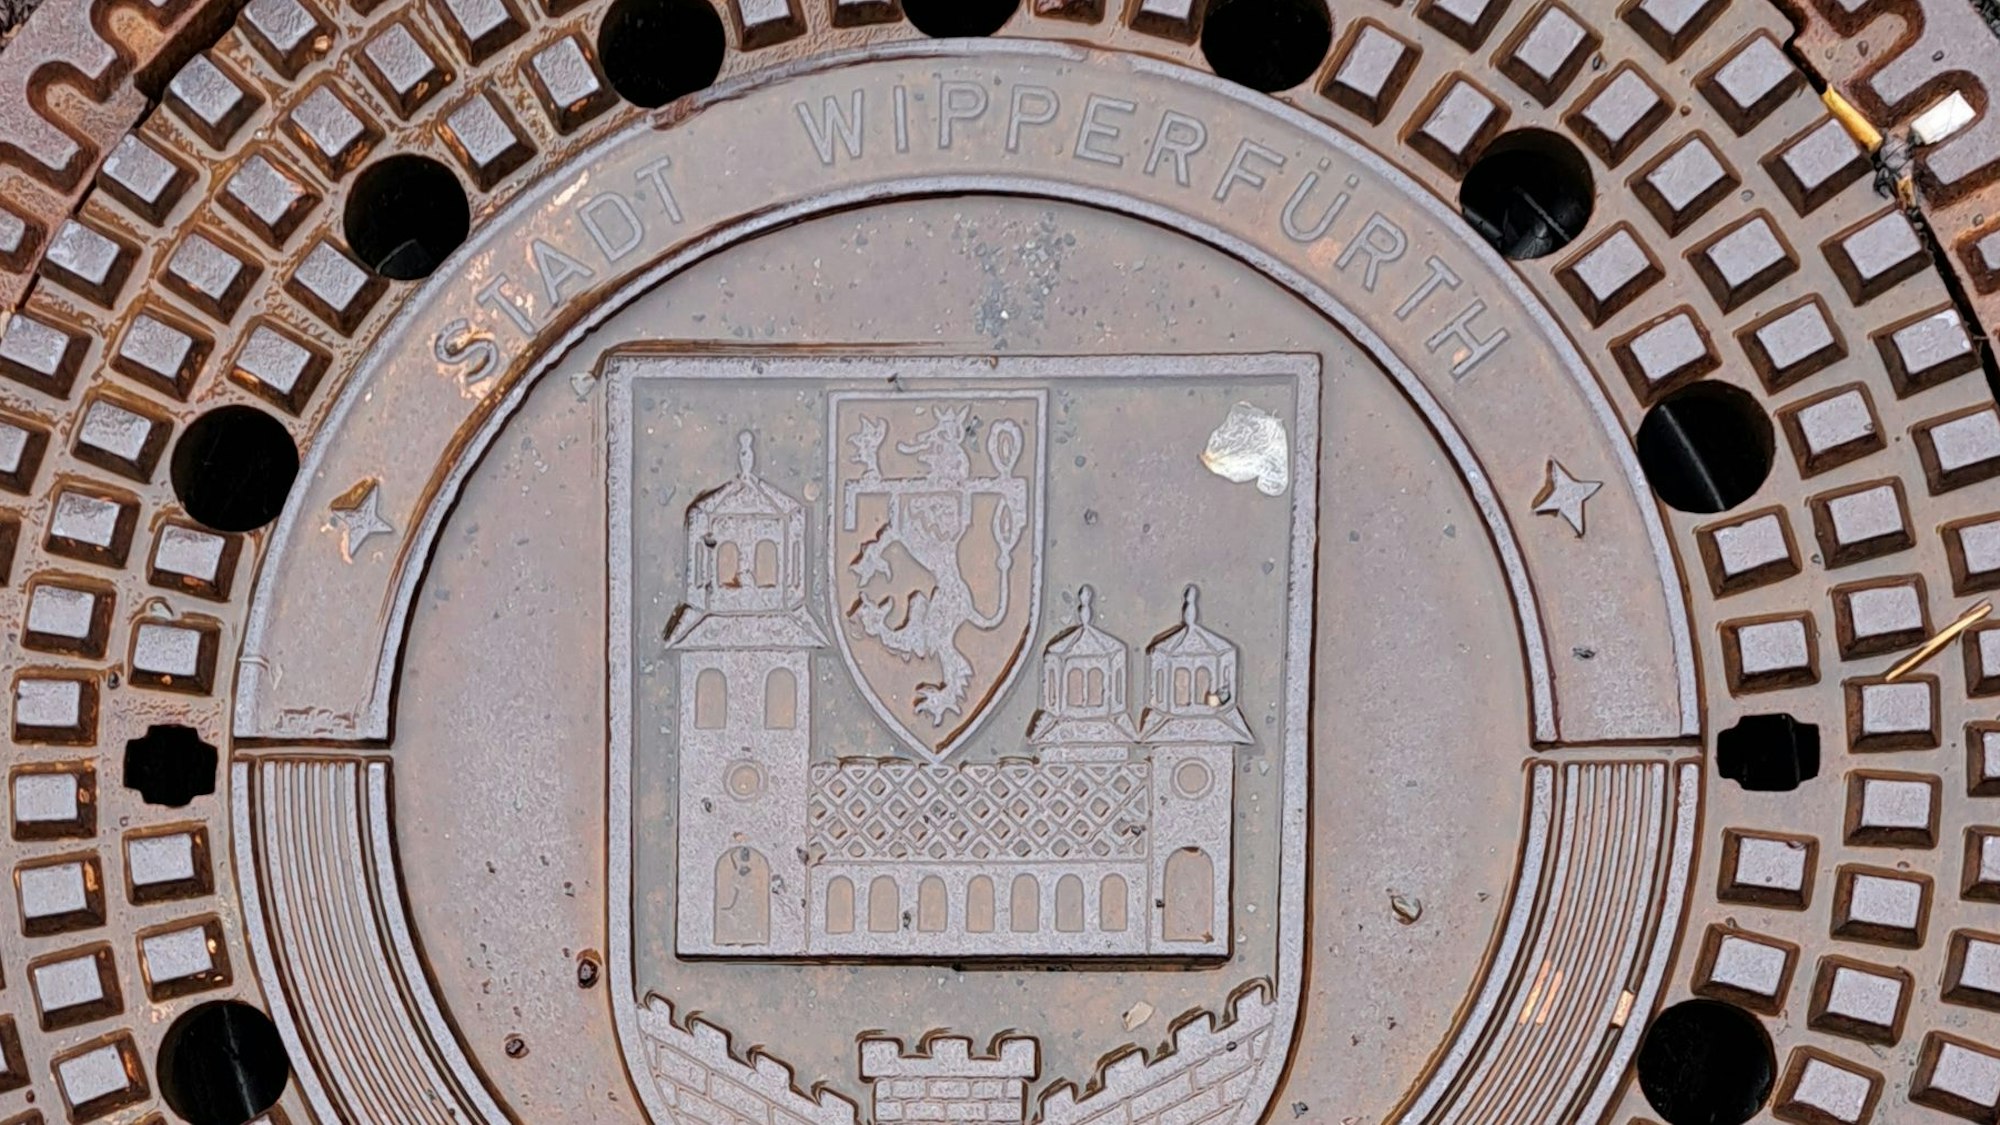 Das Bild zeigt einen Kanaldeckel mit dem Wappen der Stadt Wipperfürth